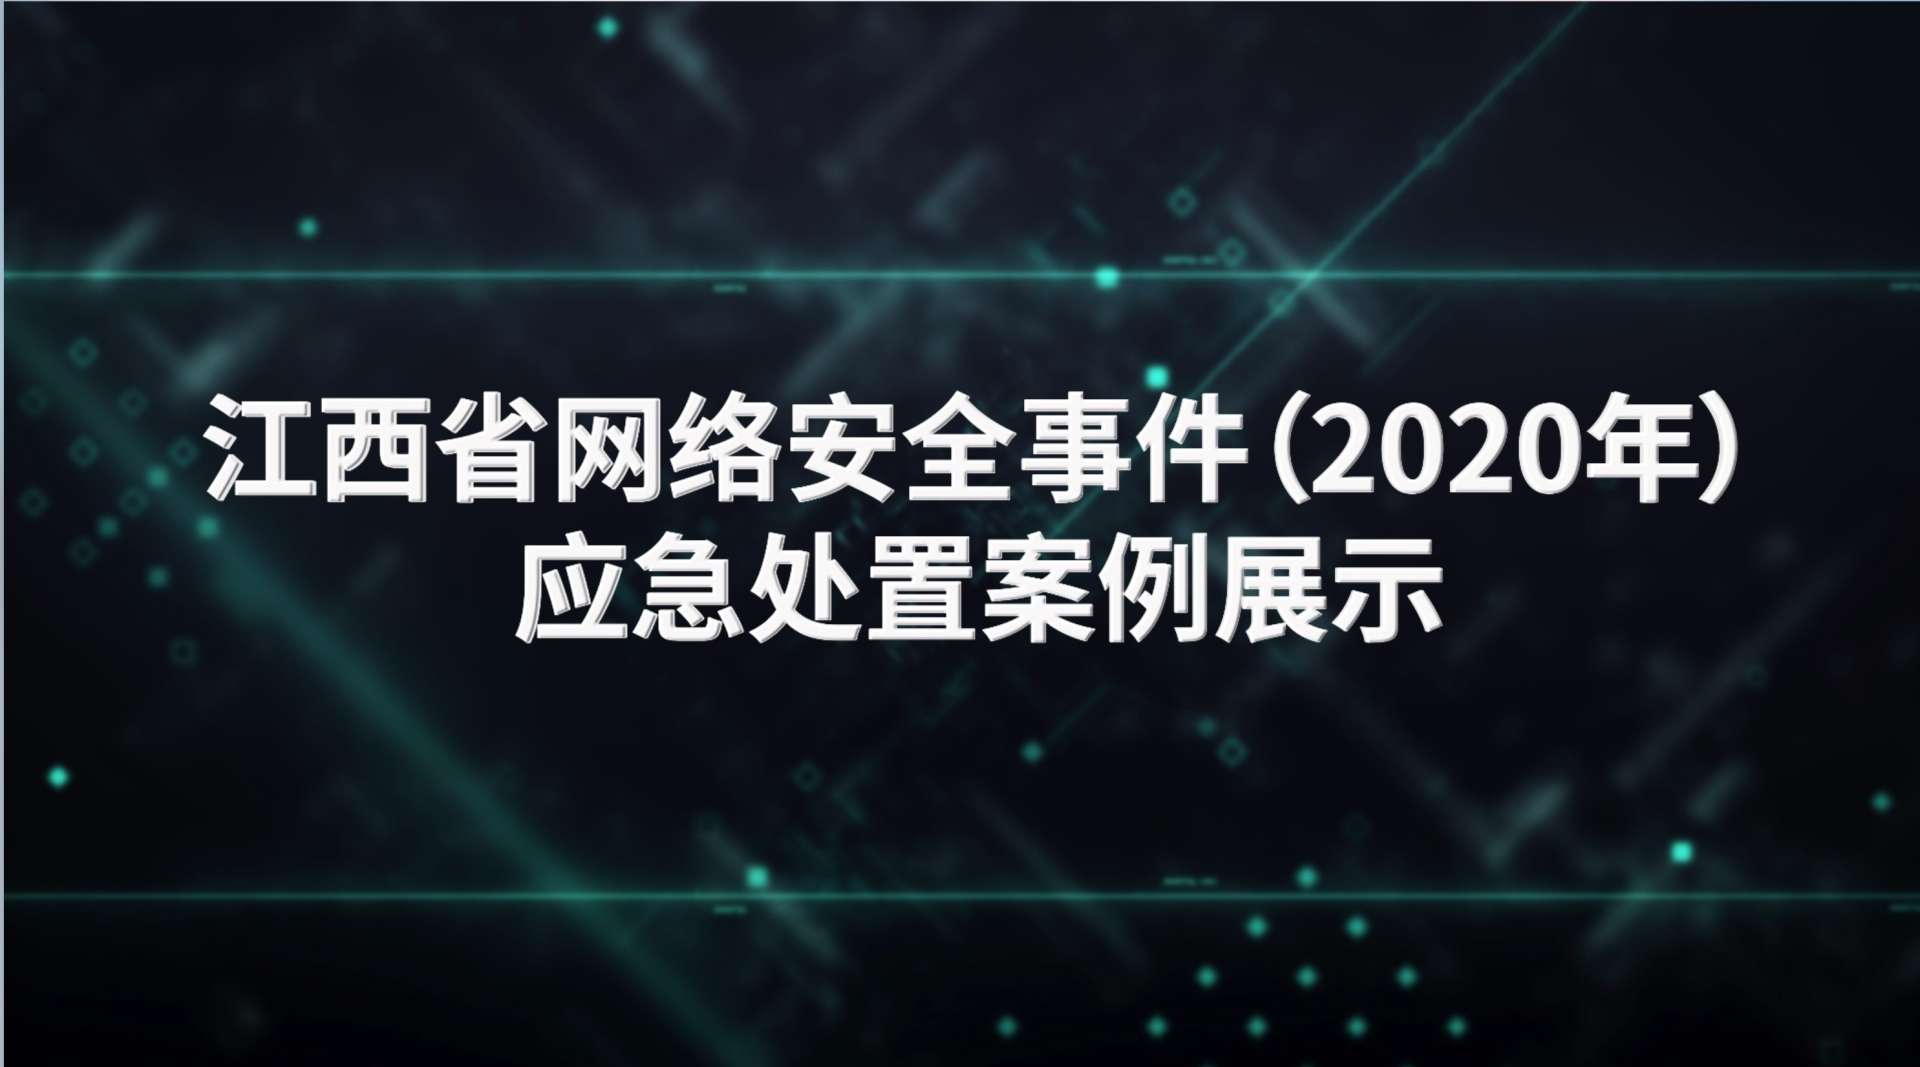 江西省网络安全事件（2020年）应急处置案例展示